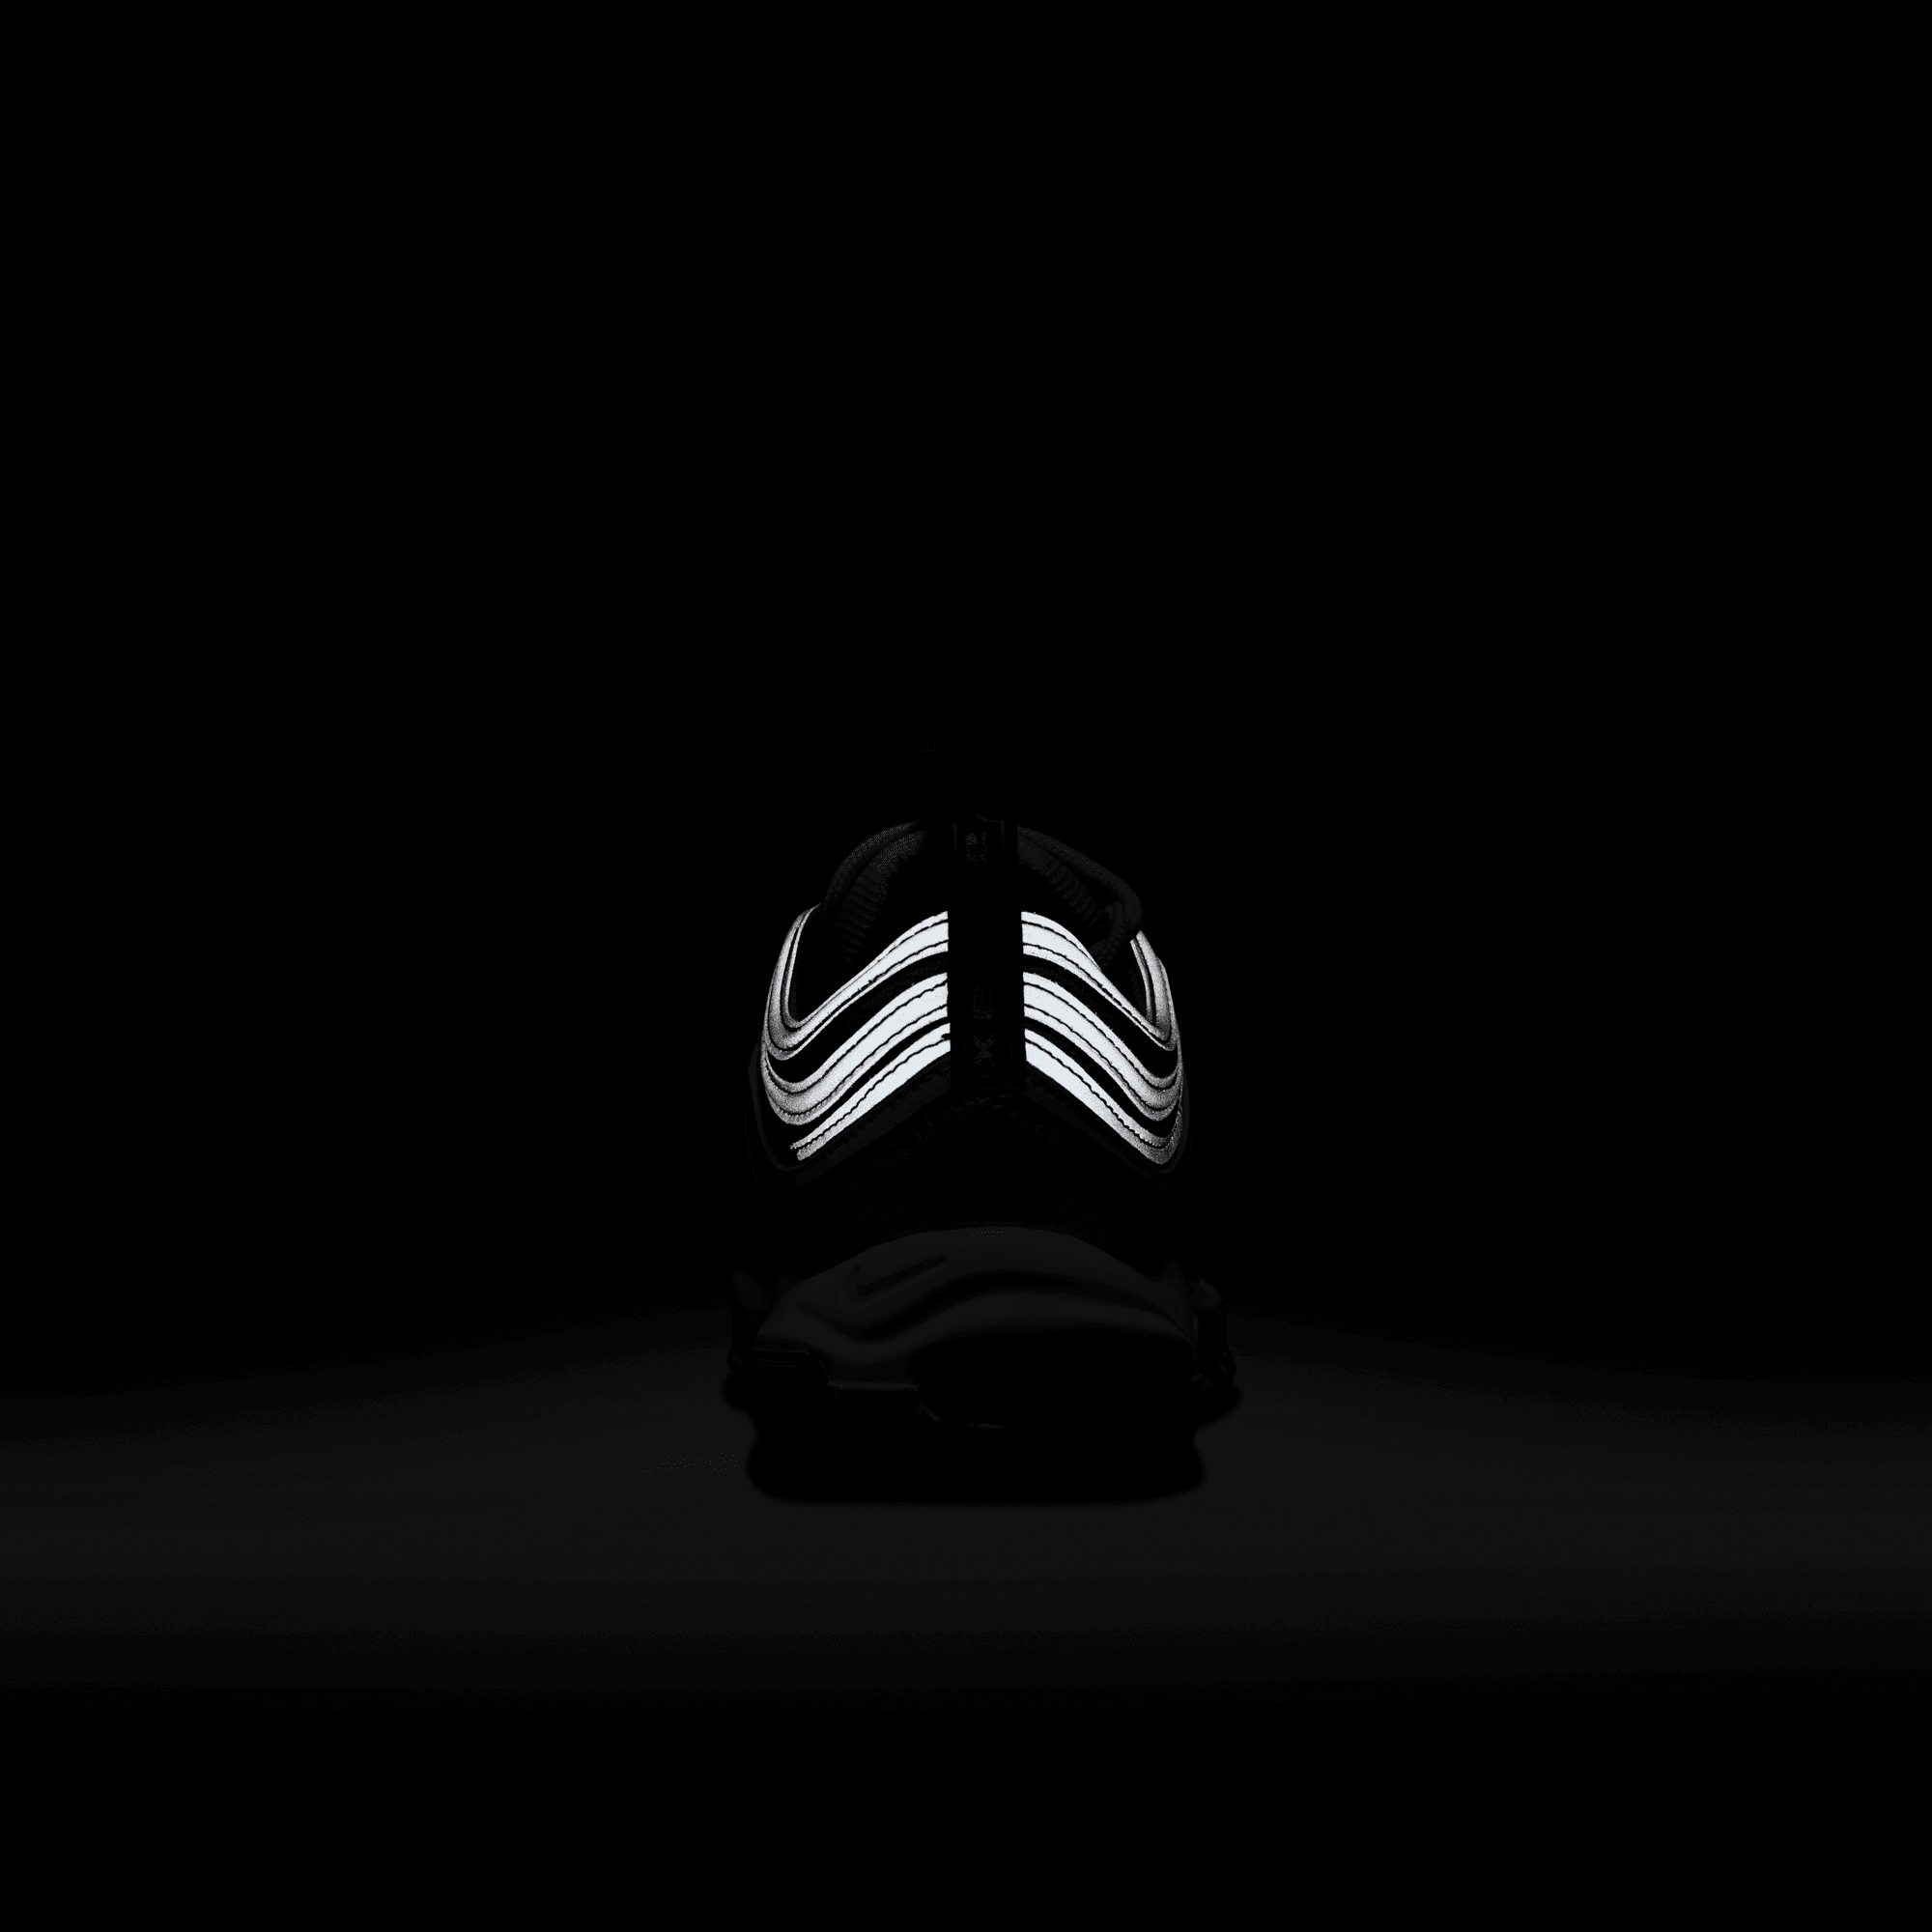 Nike Footwear Nike Air Max 97 - Men's